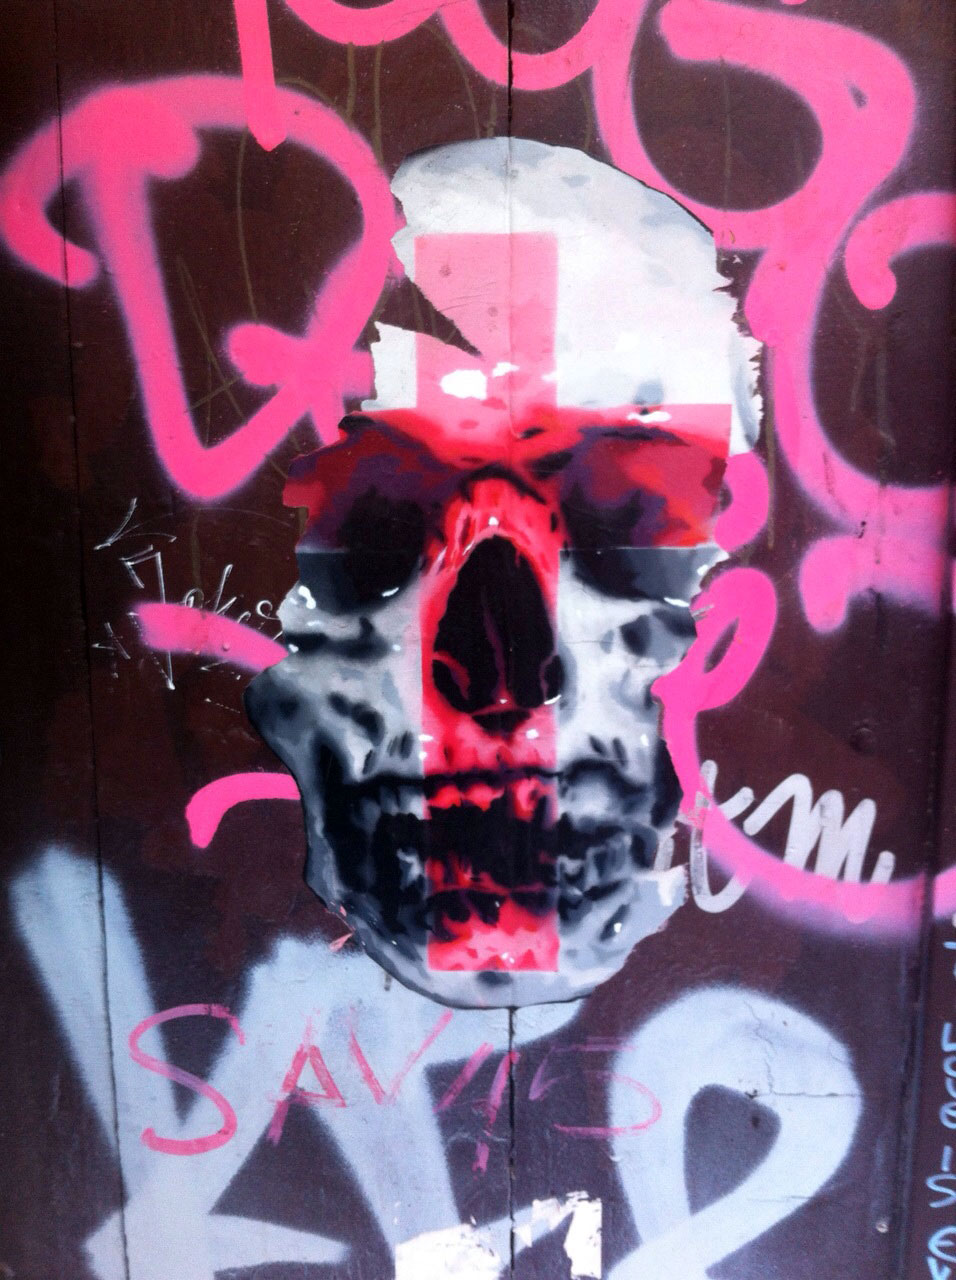 Bàlu Stencil street art, Barcelona